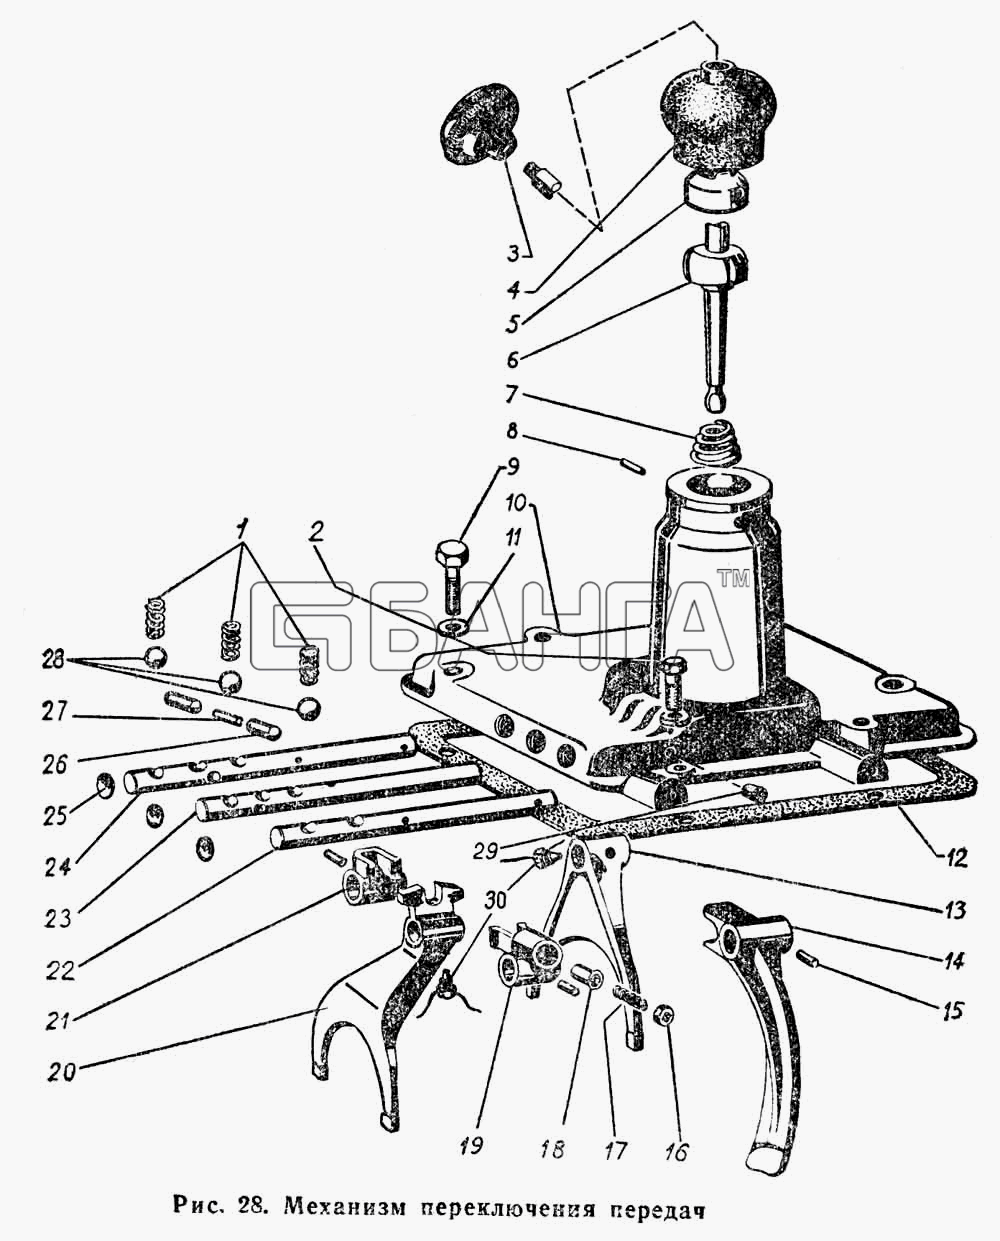 ГАЗ ГАЗ-66 (Каталог 1983 г.) Схема Механизм переключения передач-57